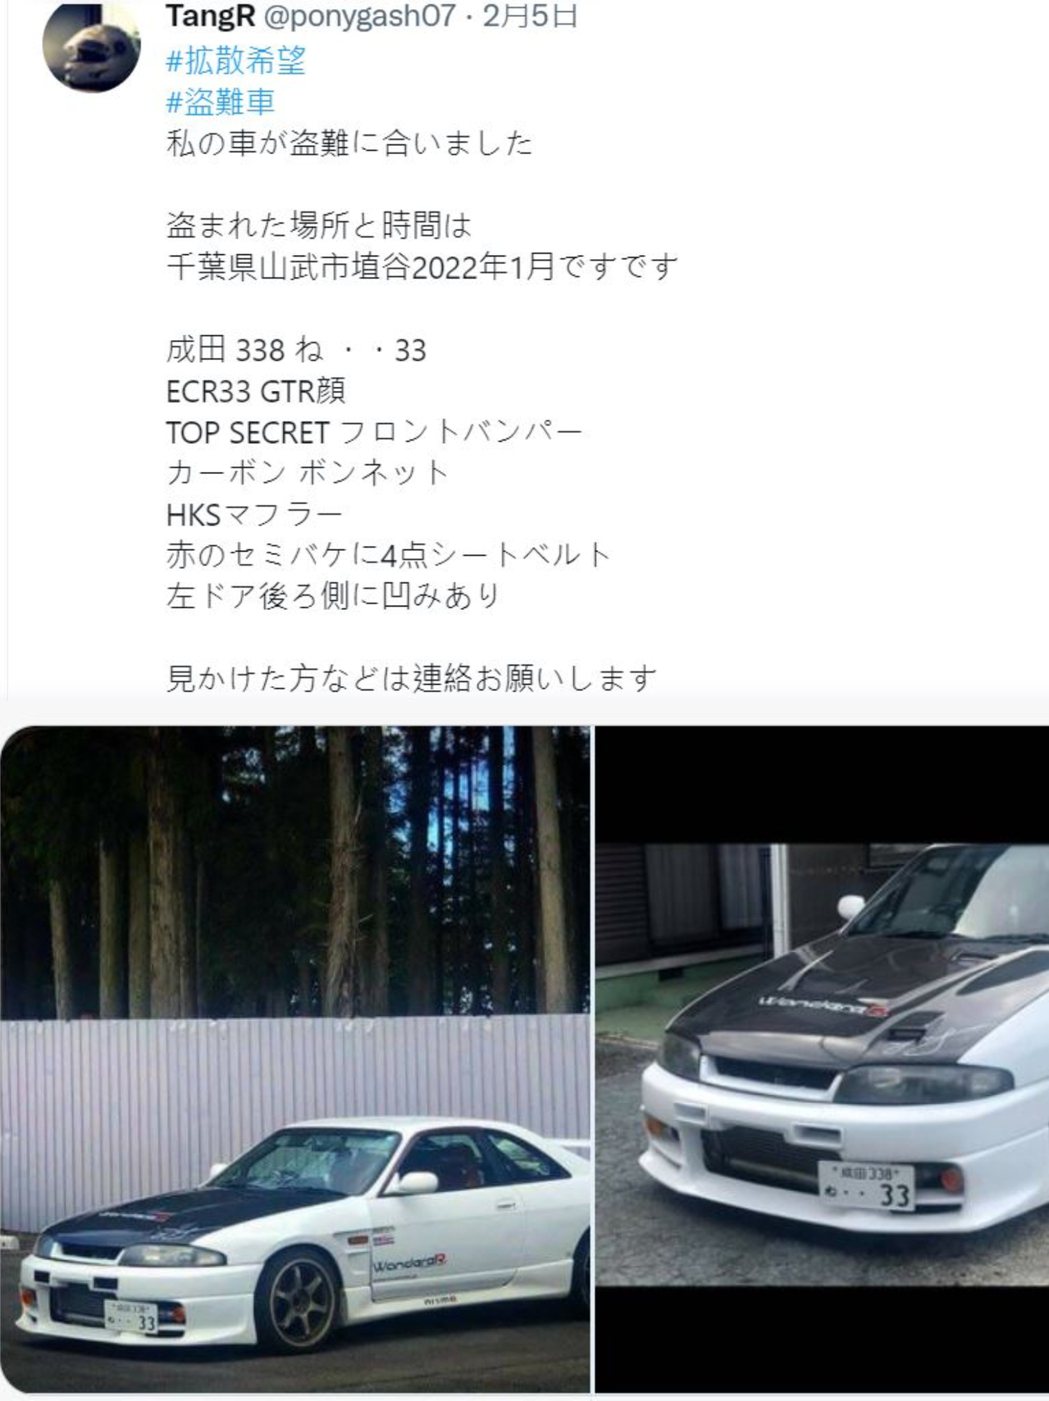 日本nissan Silvia S15價格飆高至0萬且jdm跑車失竊率逐漸飆升 車壇新訊 國際車訊 發燒車訊